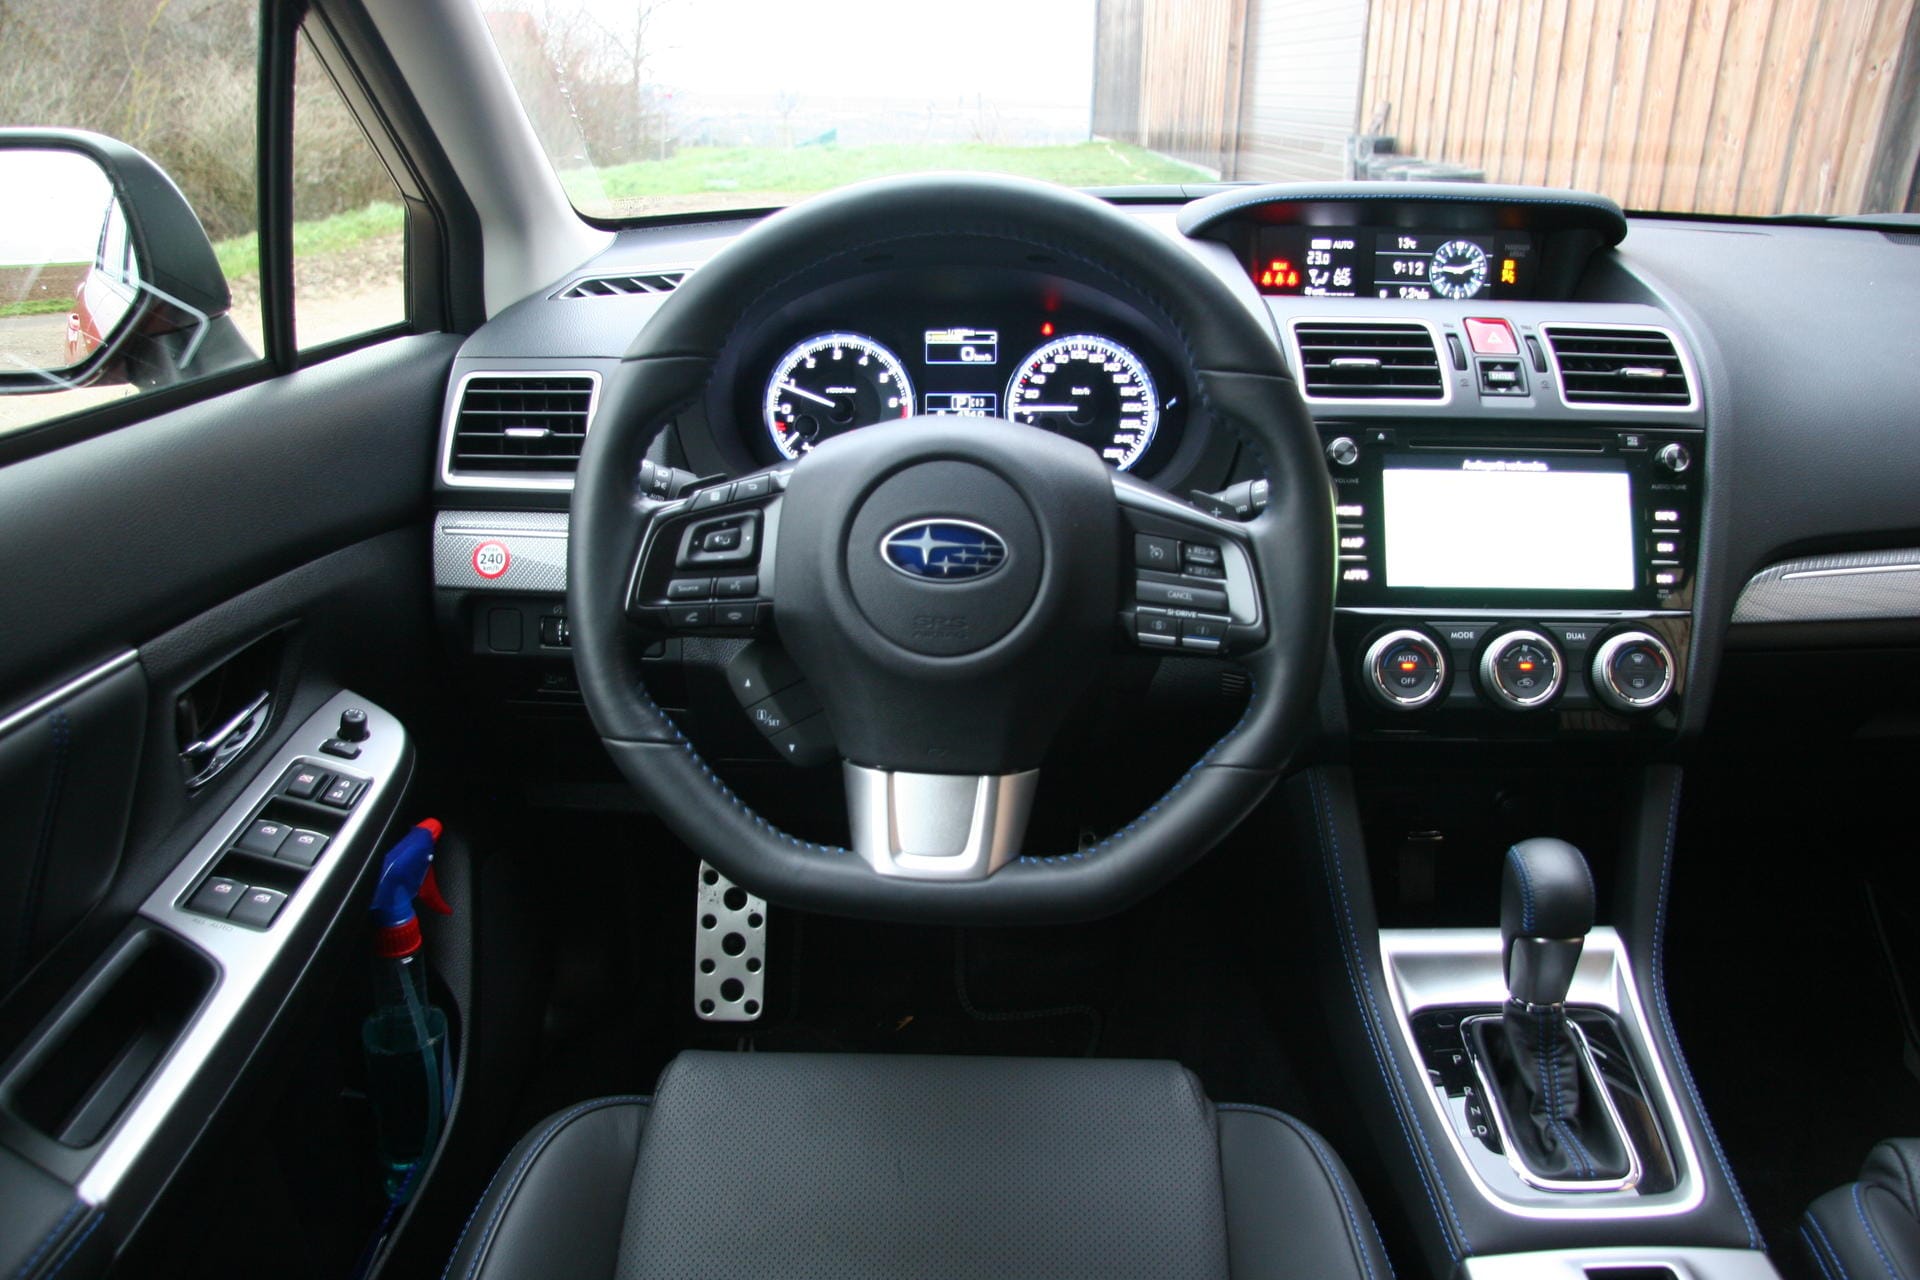 Ansonsten sieht der Innenraum aus, wie er bei Subaru eben aussieht. Mit einem Unterschied: Er ist deutlich schicker geworden.